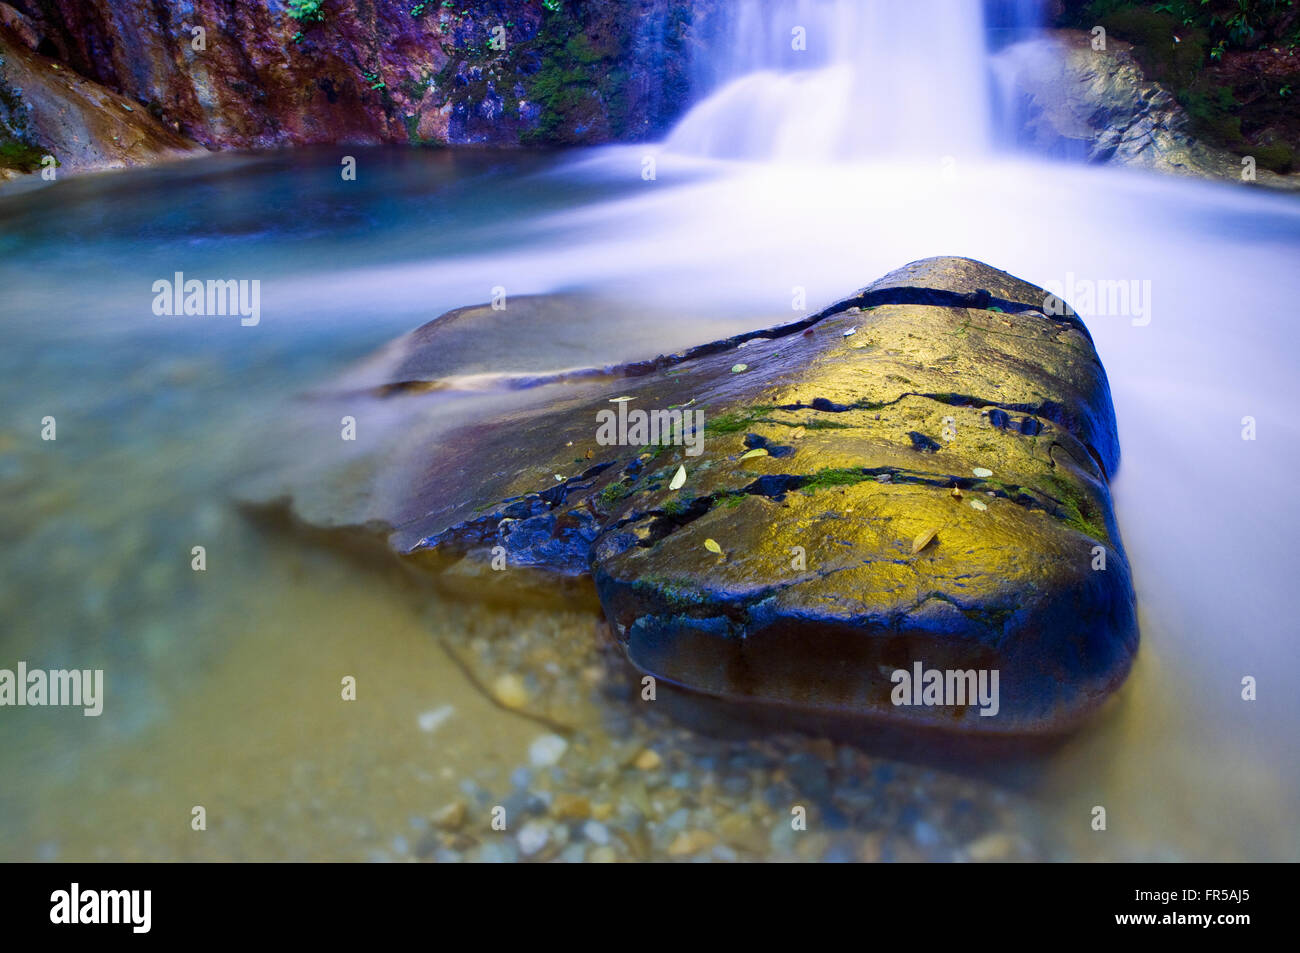 Una imagen horizontal de una sola roca grande en un charco debajo de una cascada. Imagen tomada en un bosque virgen en Gunma, Japón Foto de stock